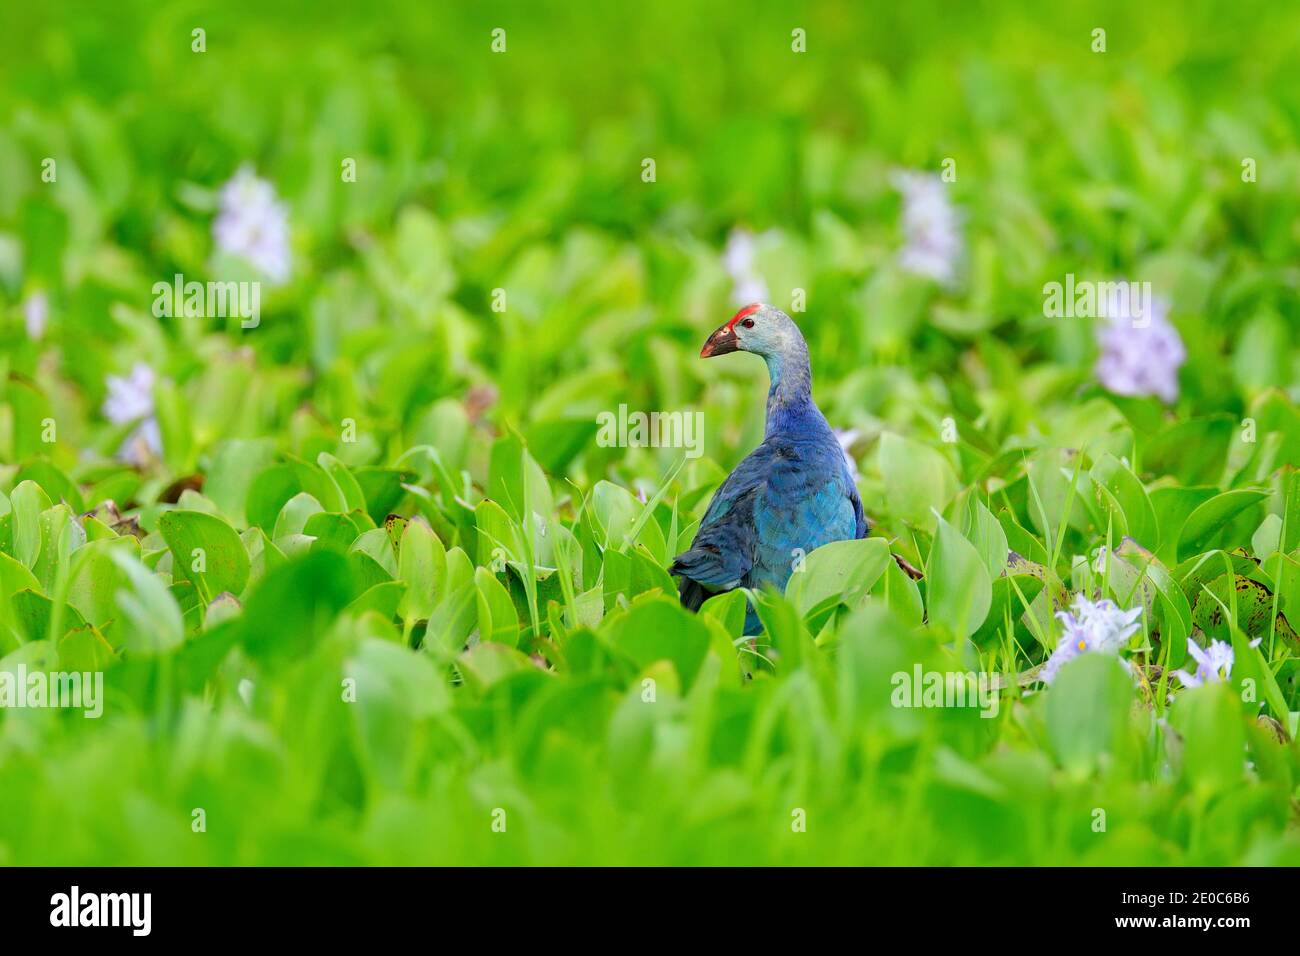 Porpora Swamphen, porphyrio porphyrio, in natura verde marcia habitat in Sri Lanka. Raro uccello blu con testa rossa in acqua fiorisce l'erba con fiori rosa. Foto Stock